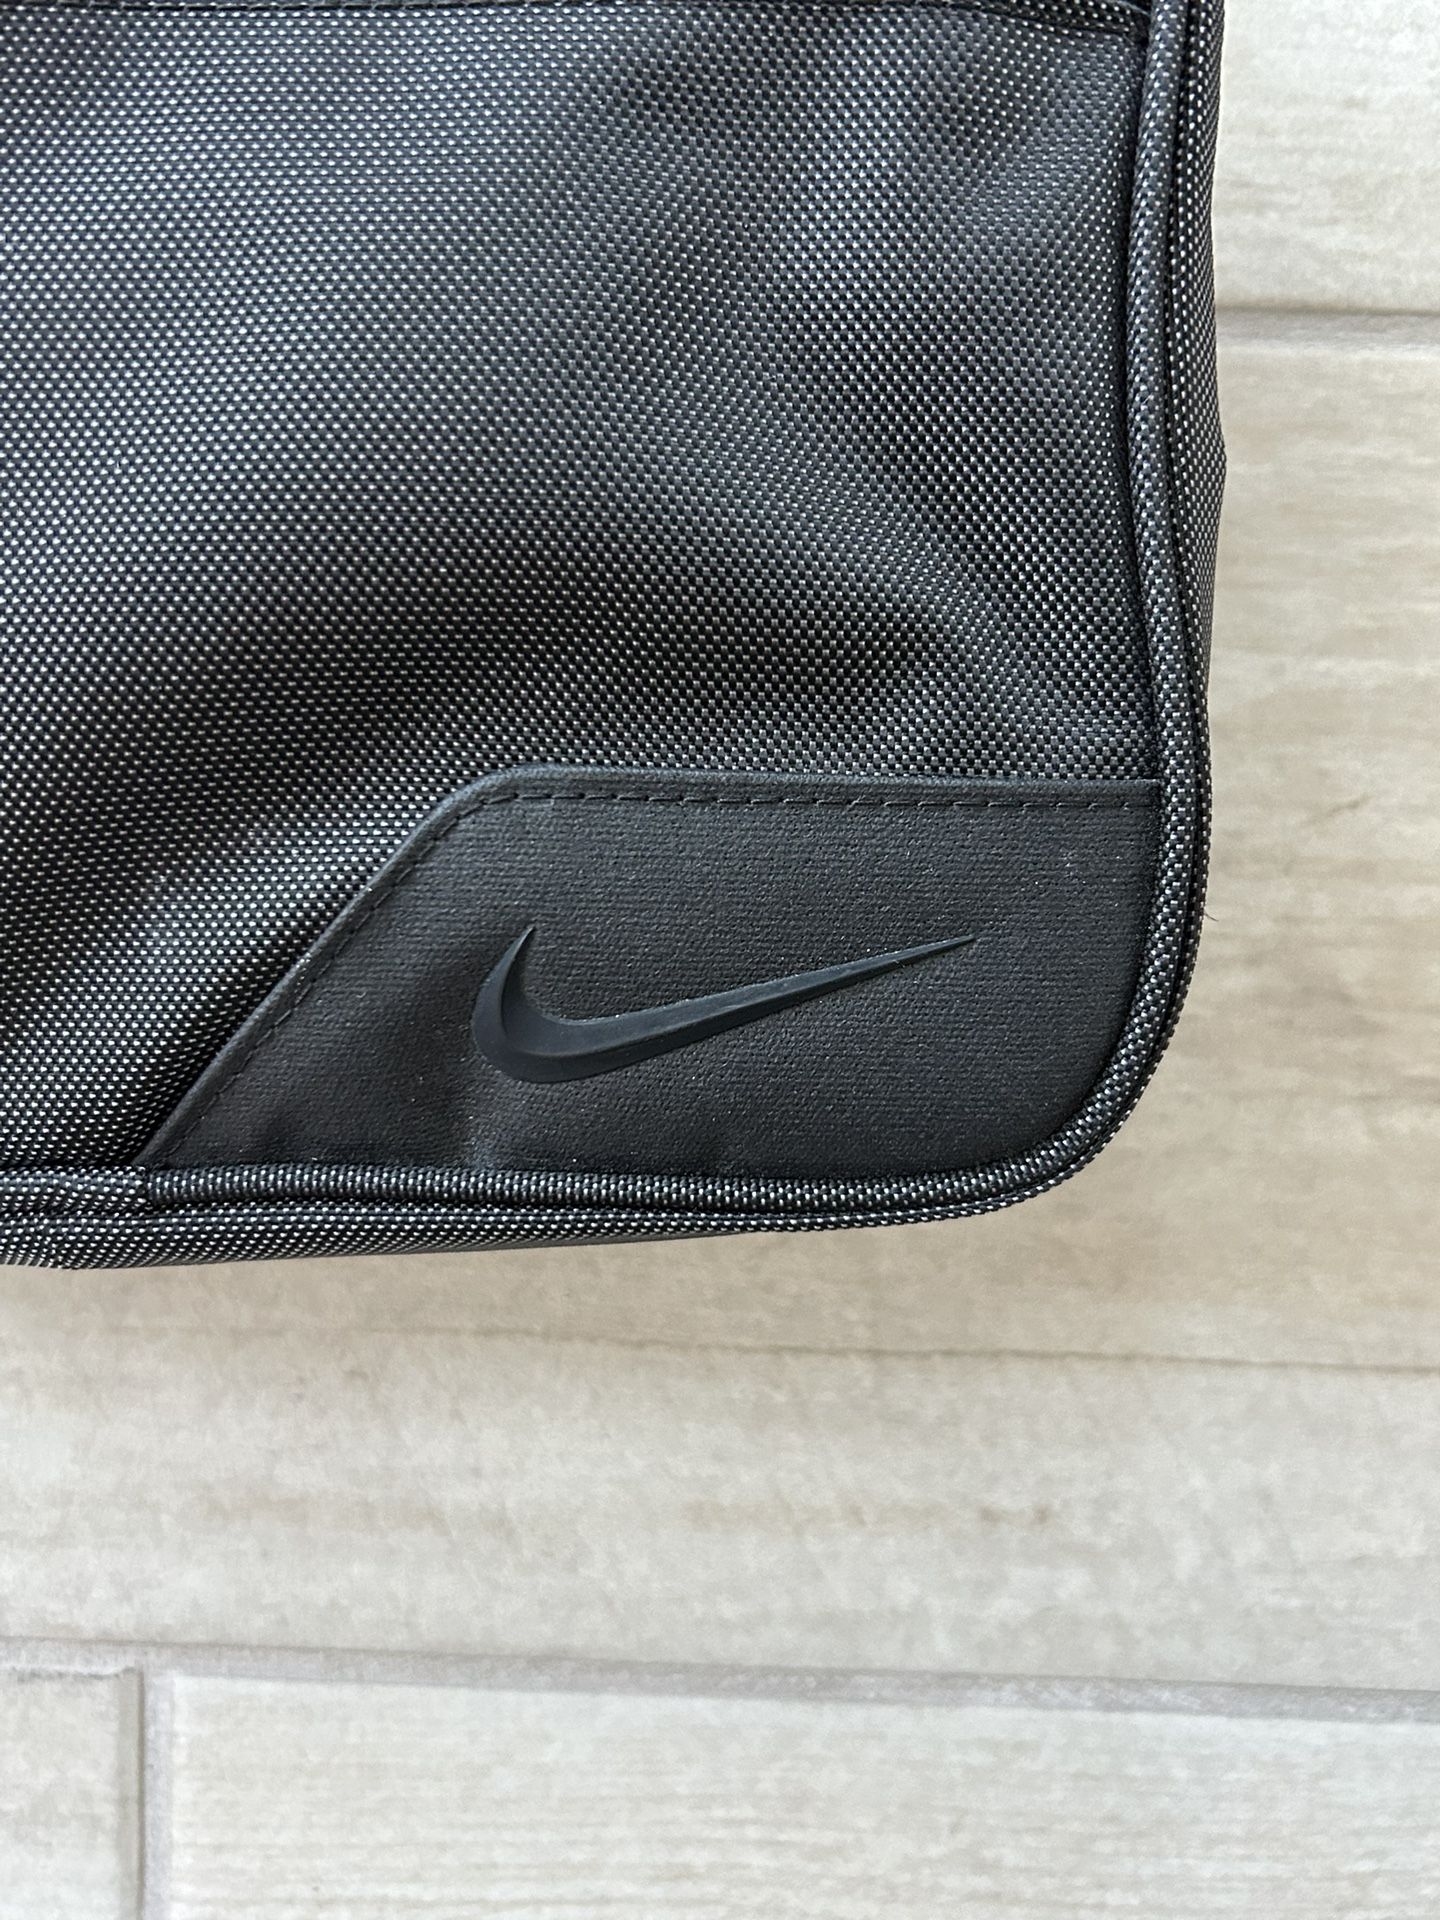 Nike Toiletry Travel Bag Black Zip Around 10”X7”x3.5” See My Listings Summerlin West Las Vegas 